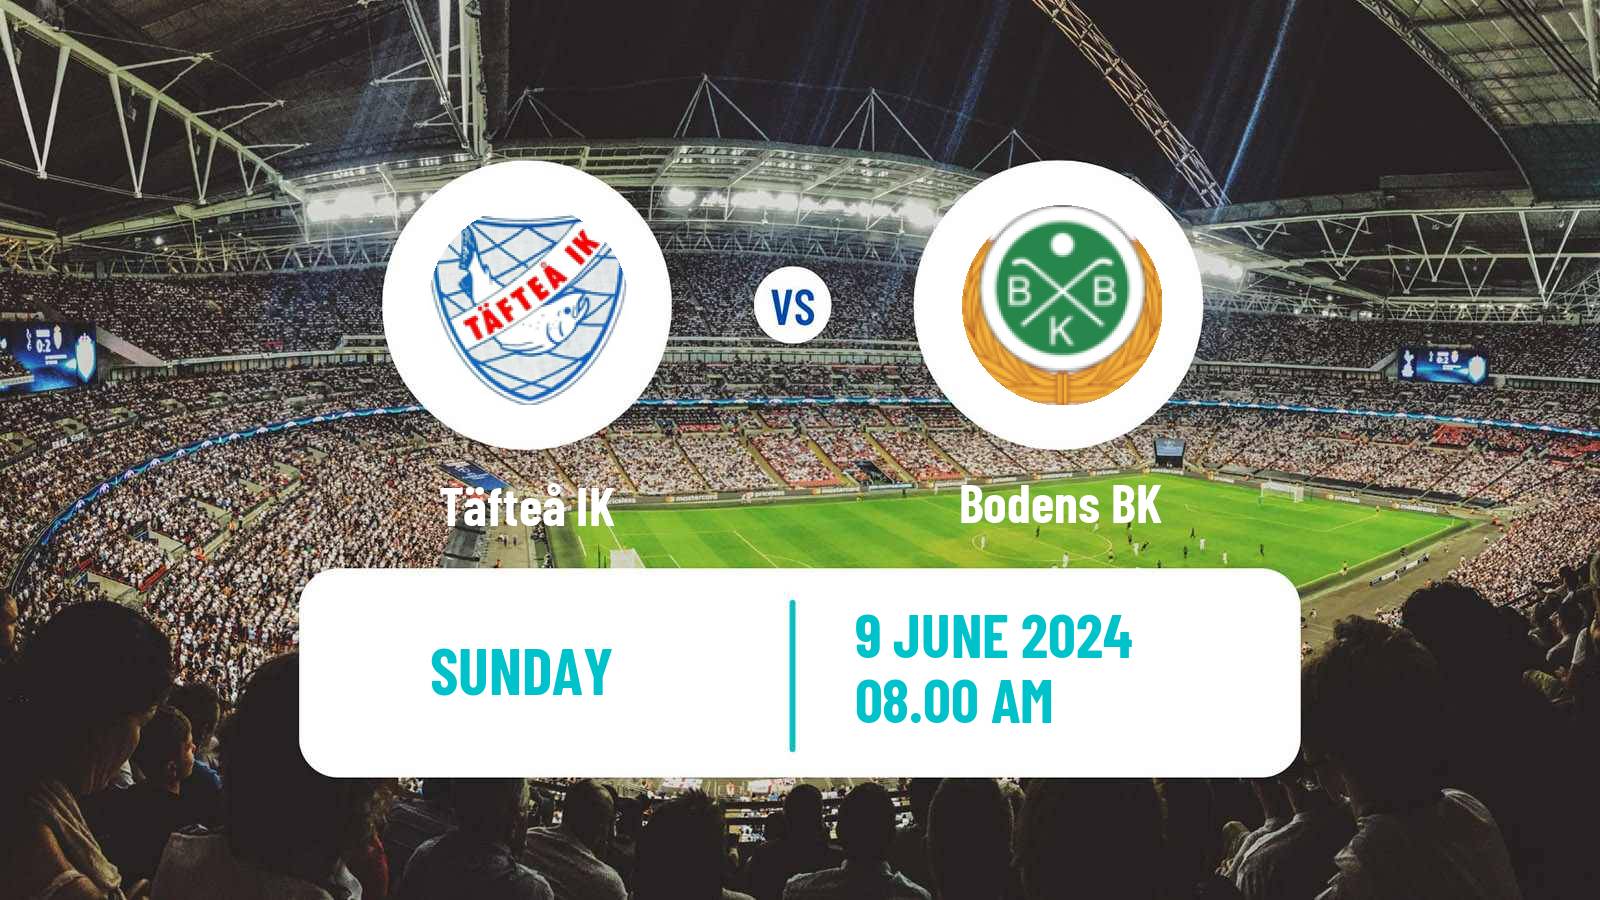 Soccer Swedish Division 2 - Norrland Täfteå - Boden